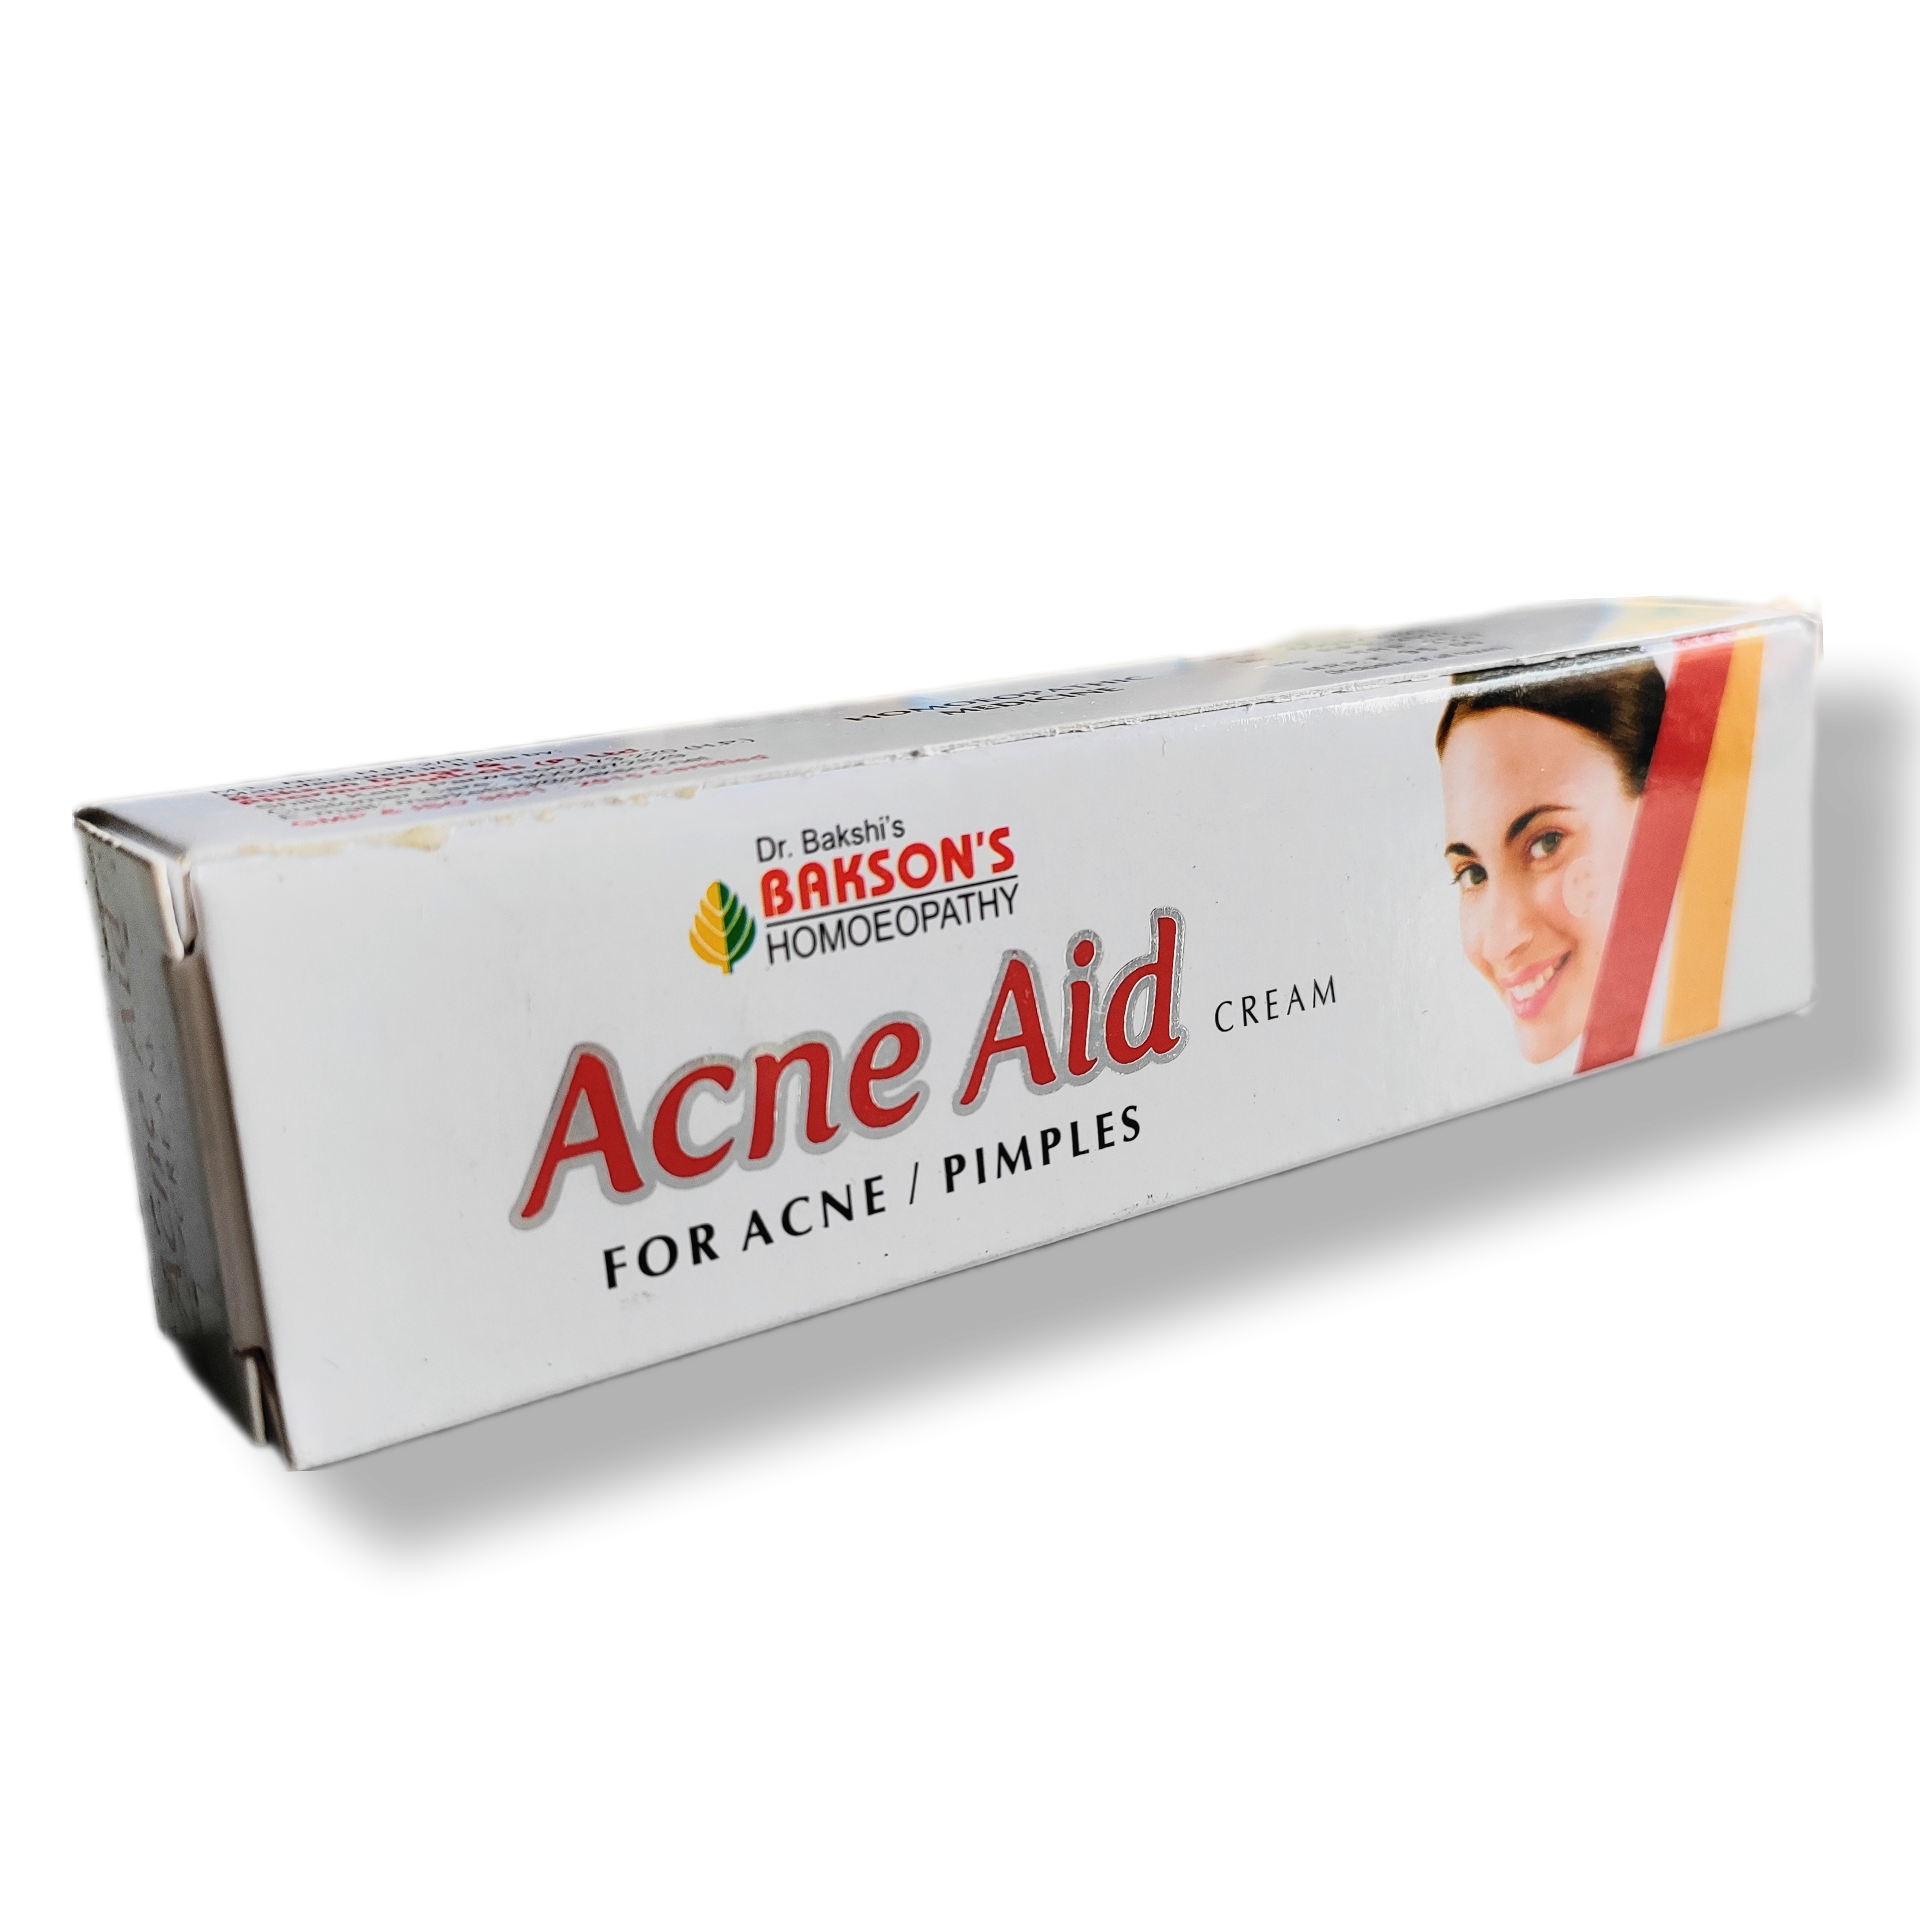 acne aid cream